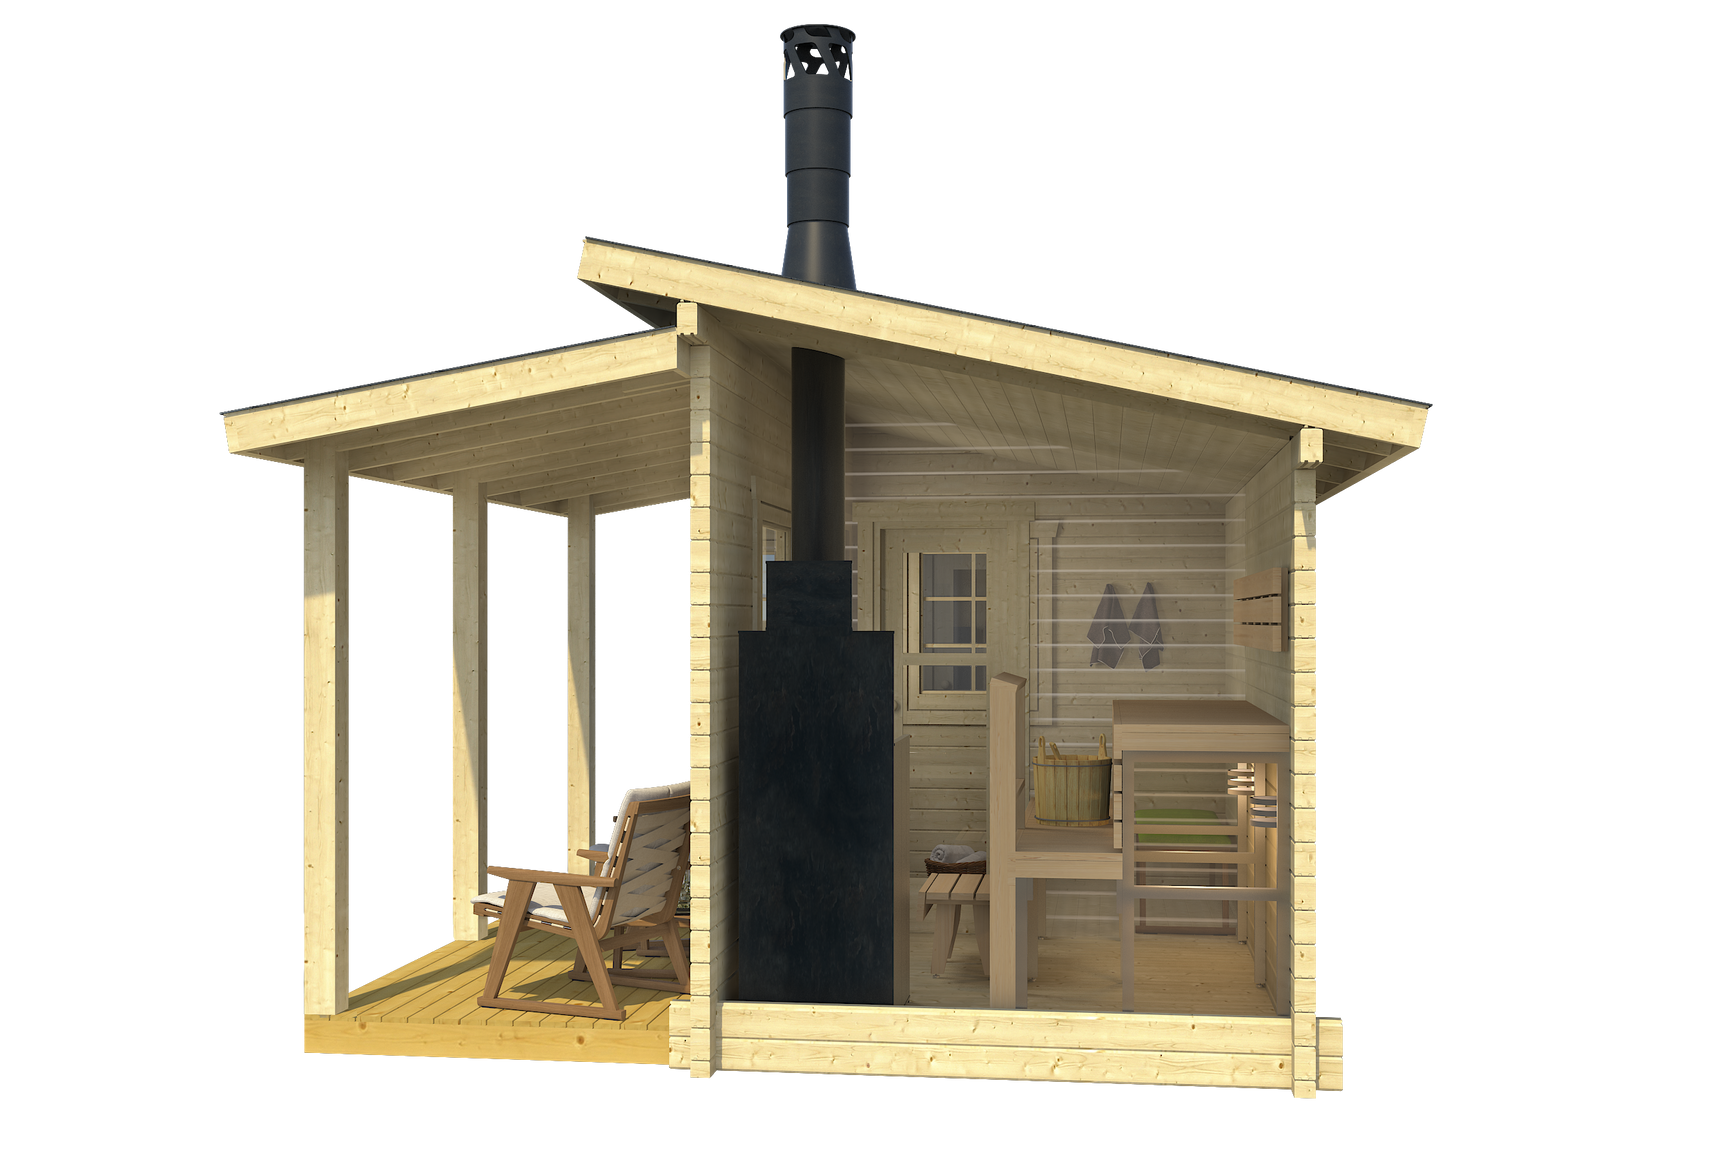 MODERNI PIHASAUNA 12 3.8x2.4m Sauna Log Cabin Side Internal